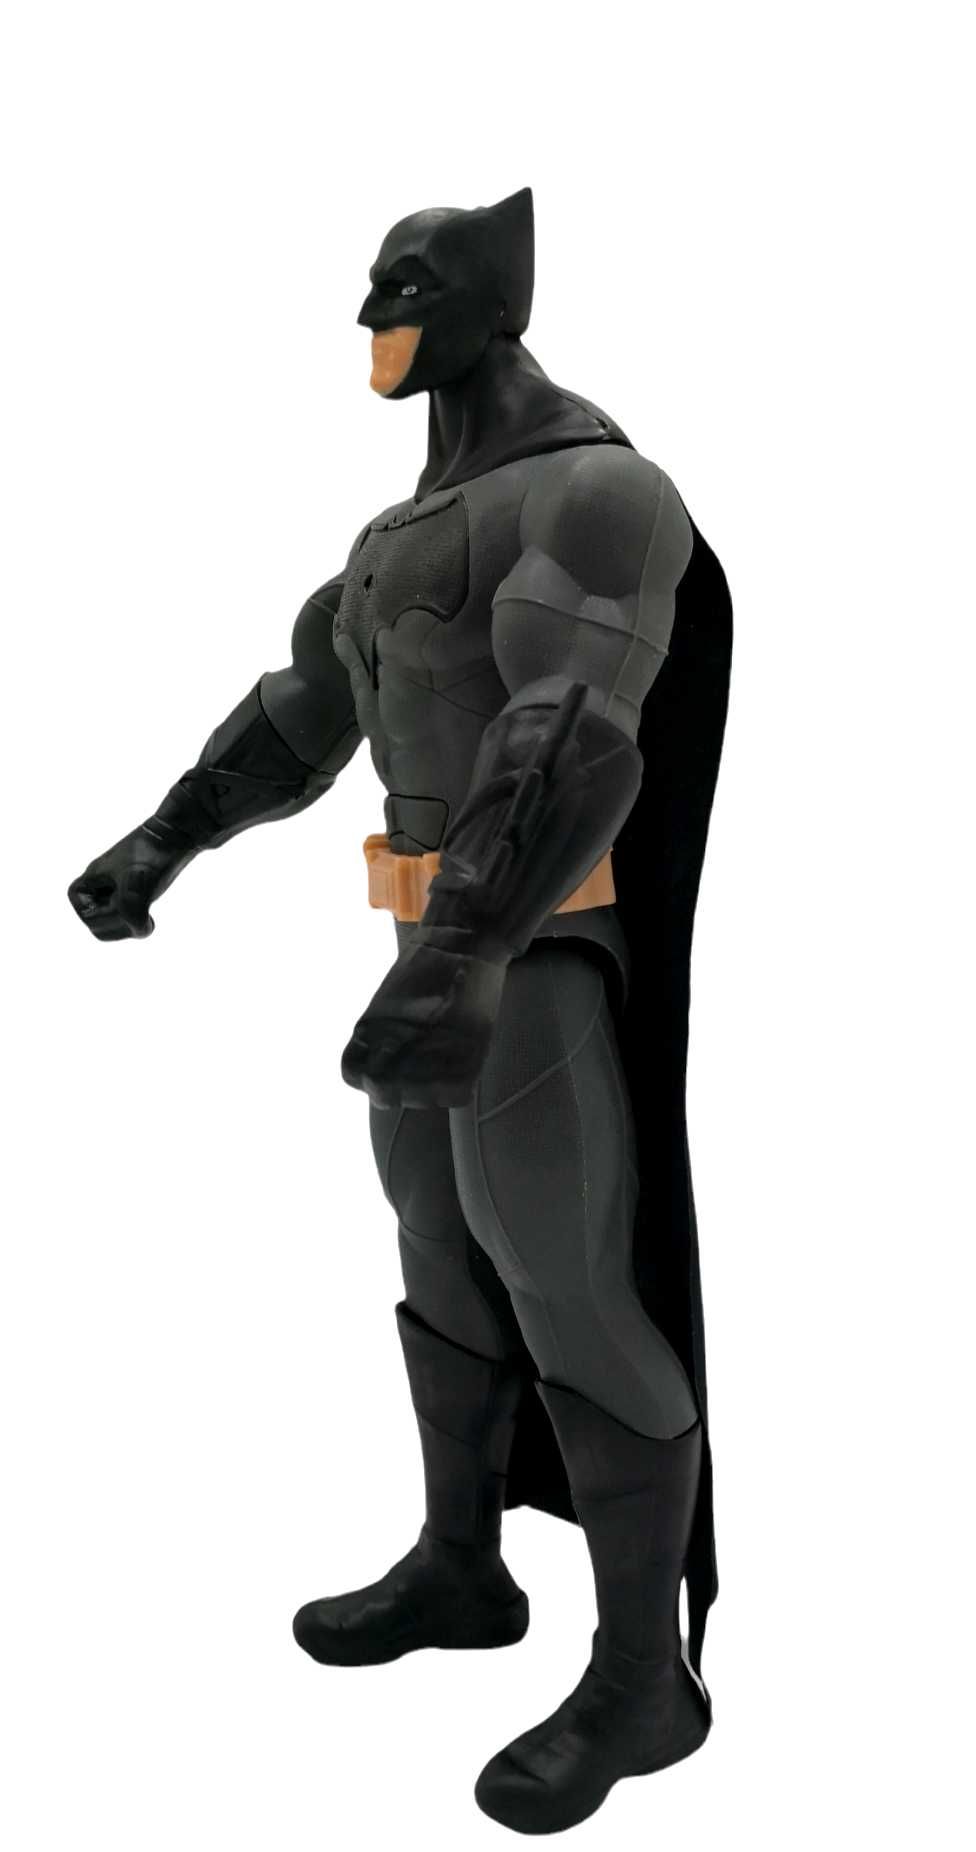 DUŻA Figurka BATMAN Avengers 30CM DŹWIĘK Ruchoma